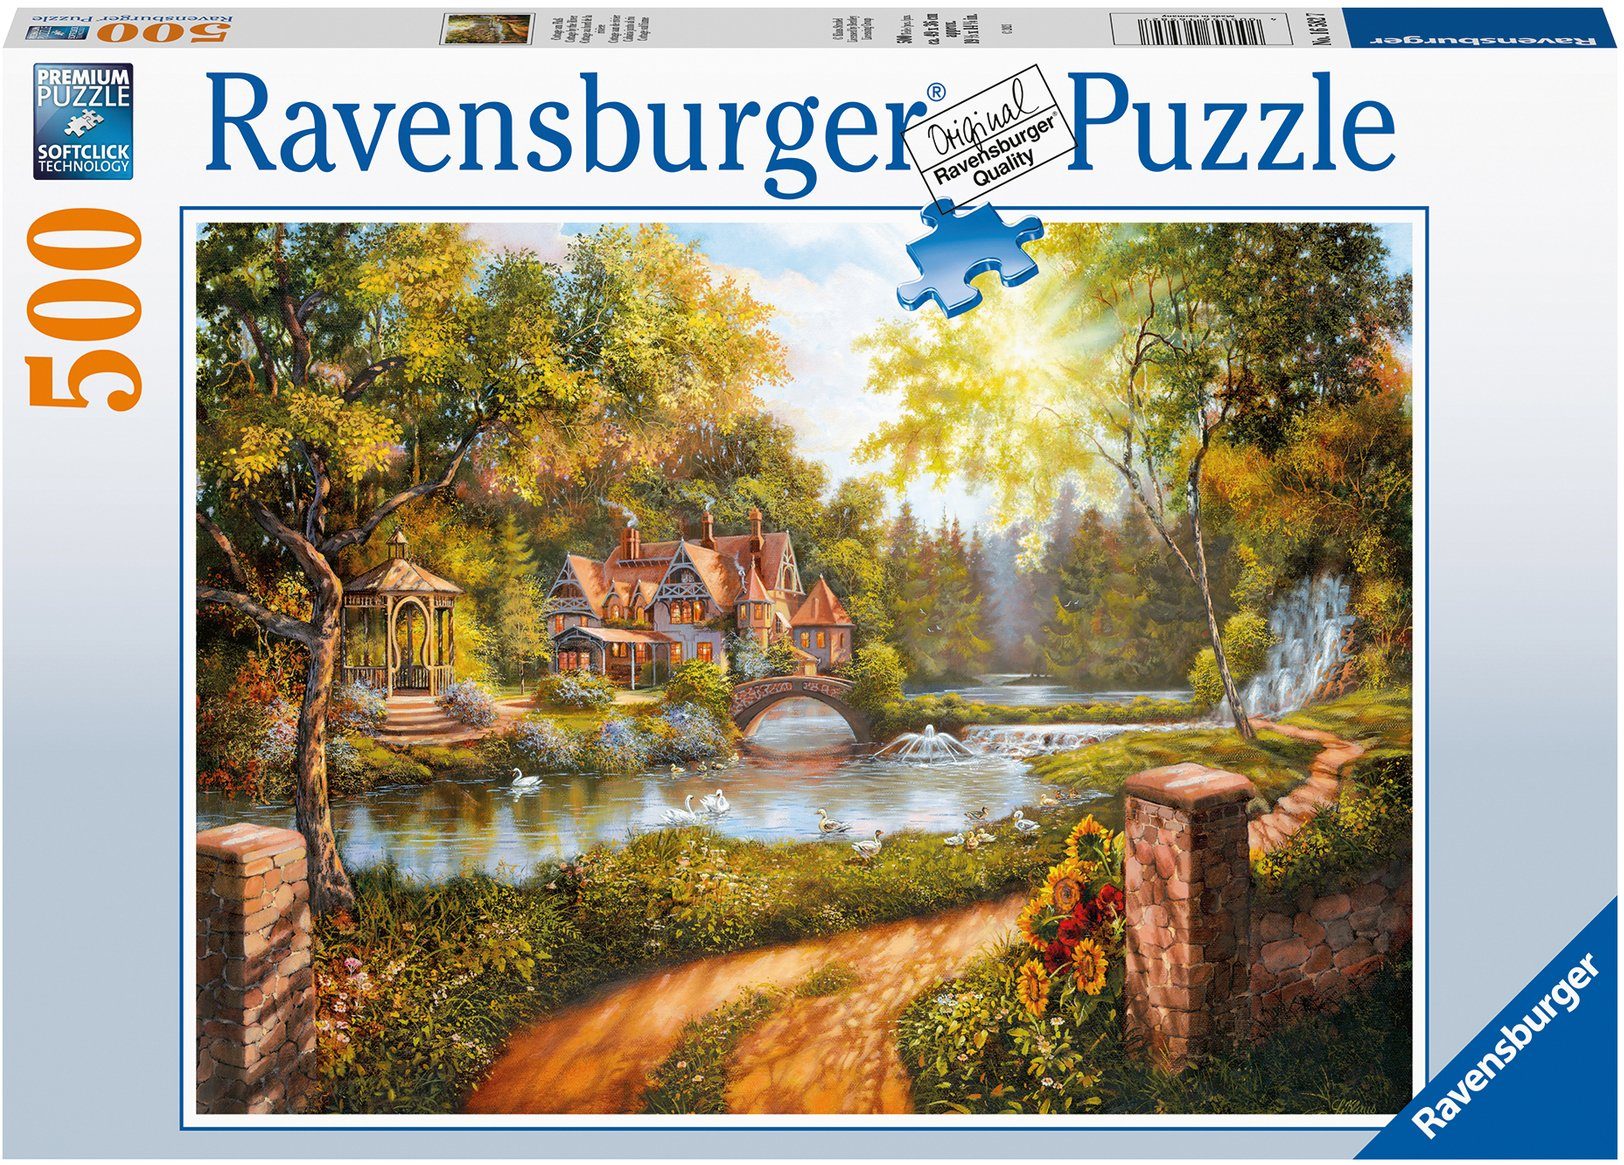 Ravensburger Puzzle Cottage am Fluß, 500 Puzzleteile, Made in Germany, FSC® - schützt Wald - weltweit